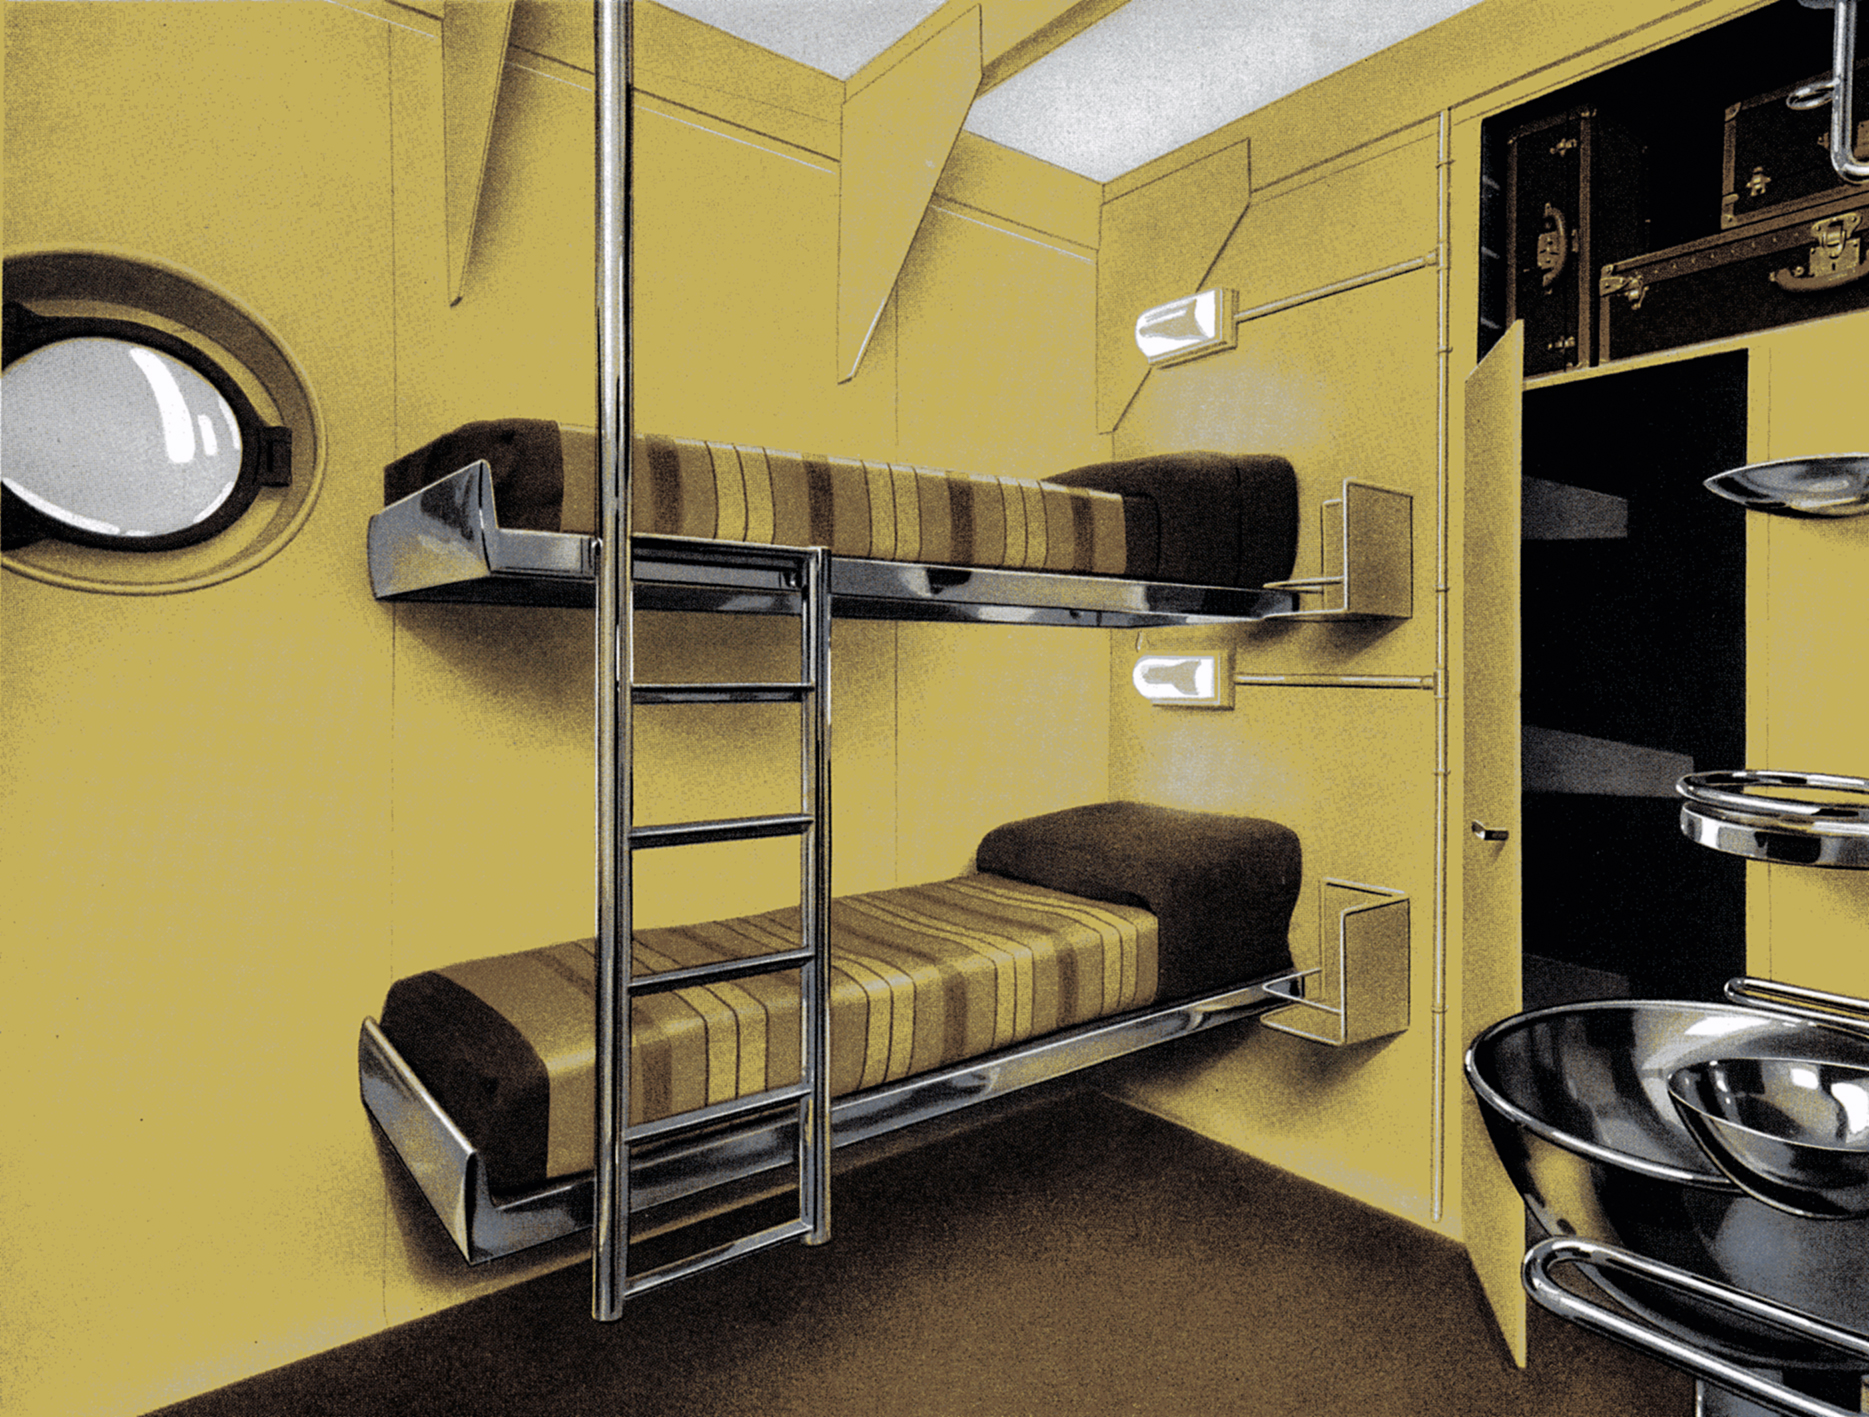 Prototype de cabine de paquebot en acier inoxydable présenté par les Ateliers Jean Prouvé (avec M. Gascoin, décorateur) au Salon d’automne, Paris, 1934 (section organisée par l’OTUA et l’UAM).